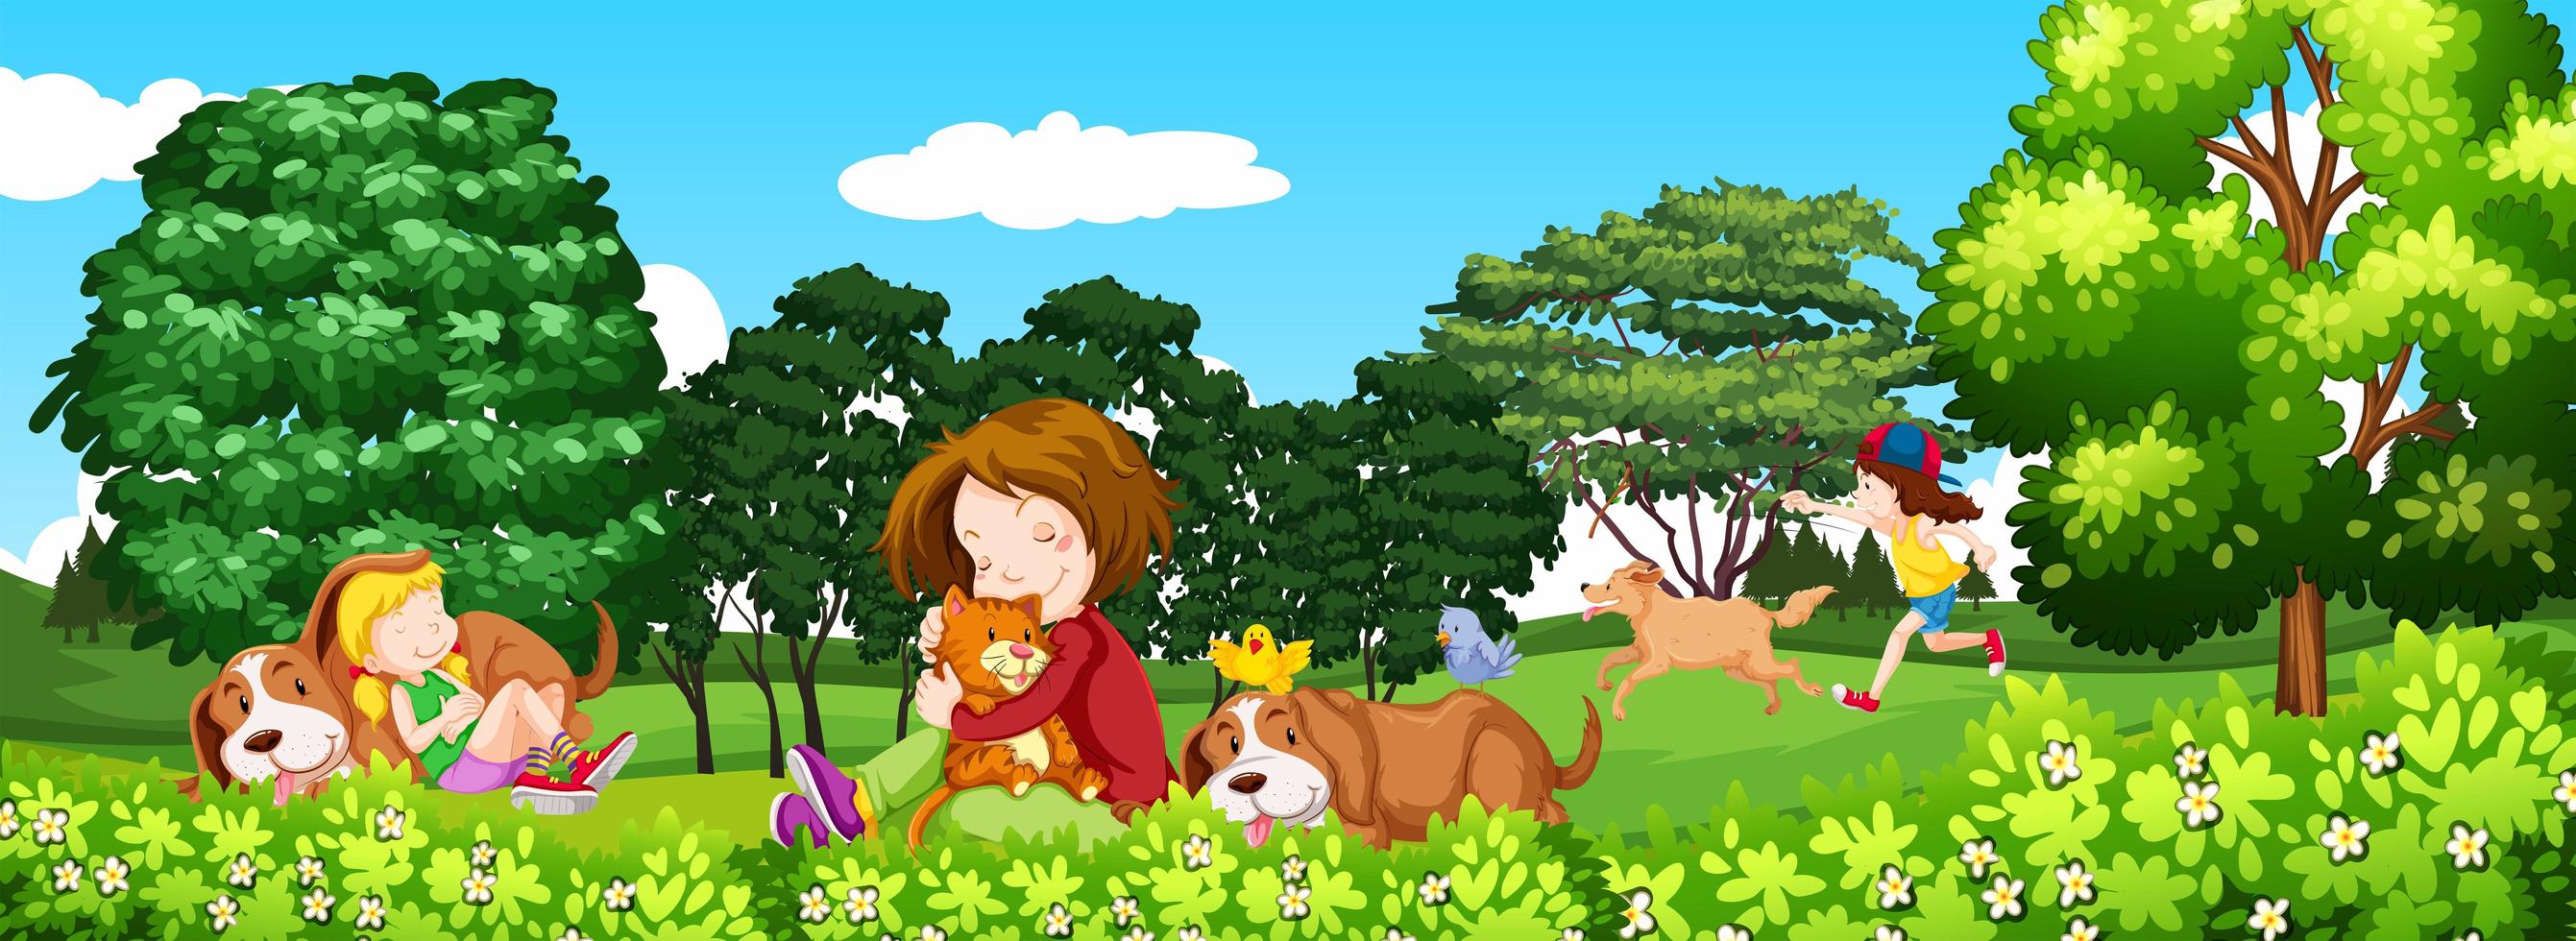 scen med barn och husdjur i parken vektor